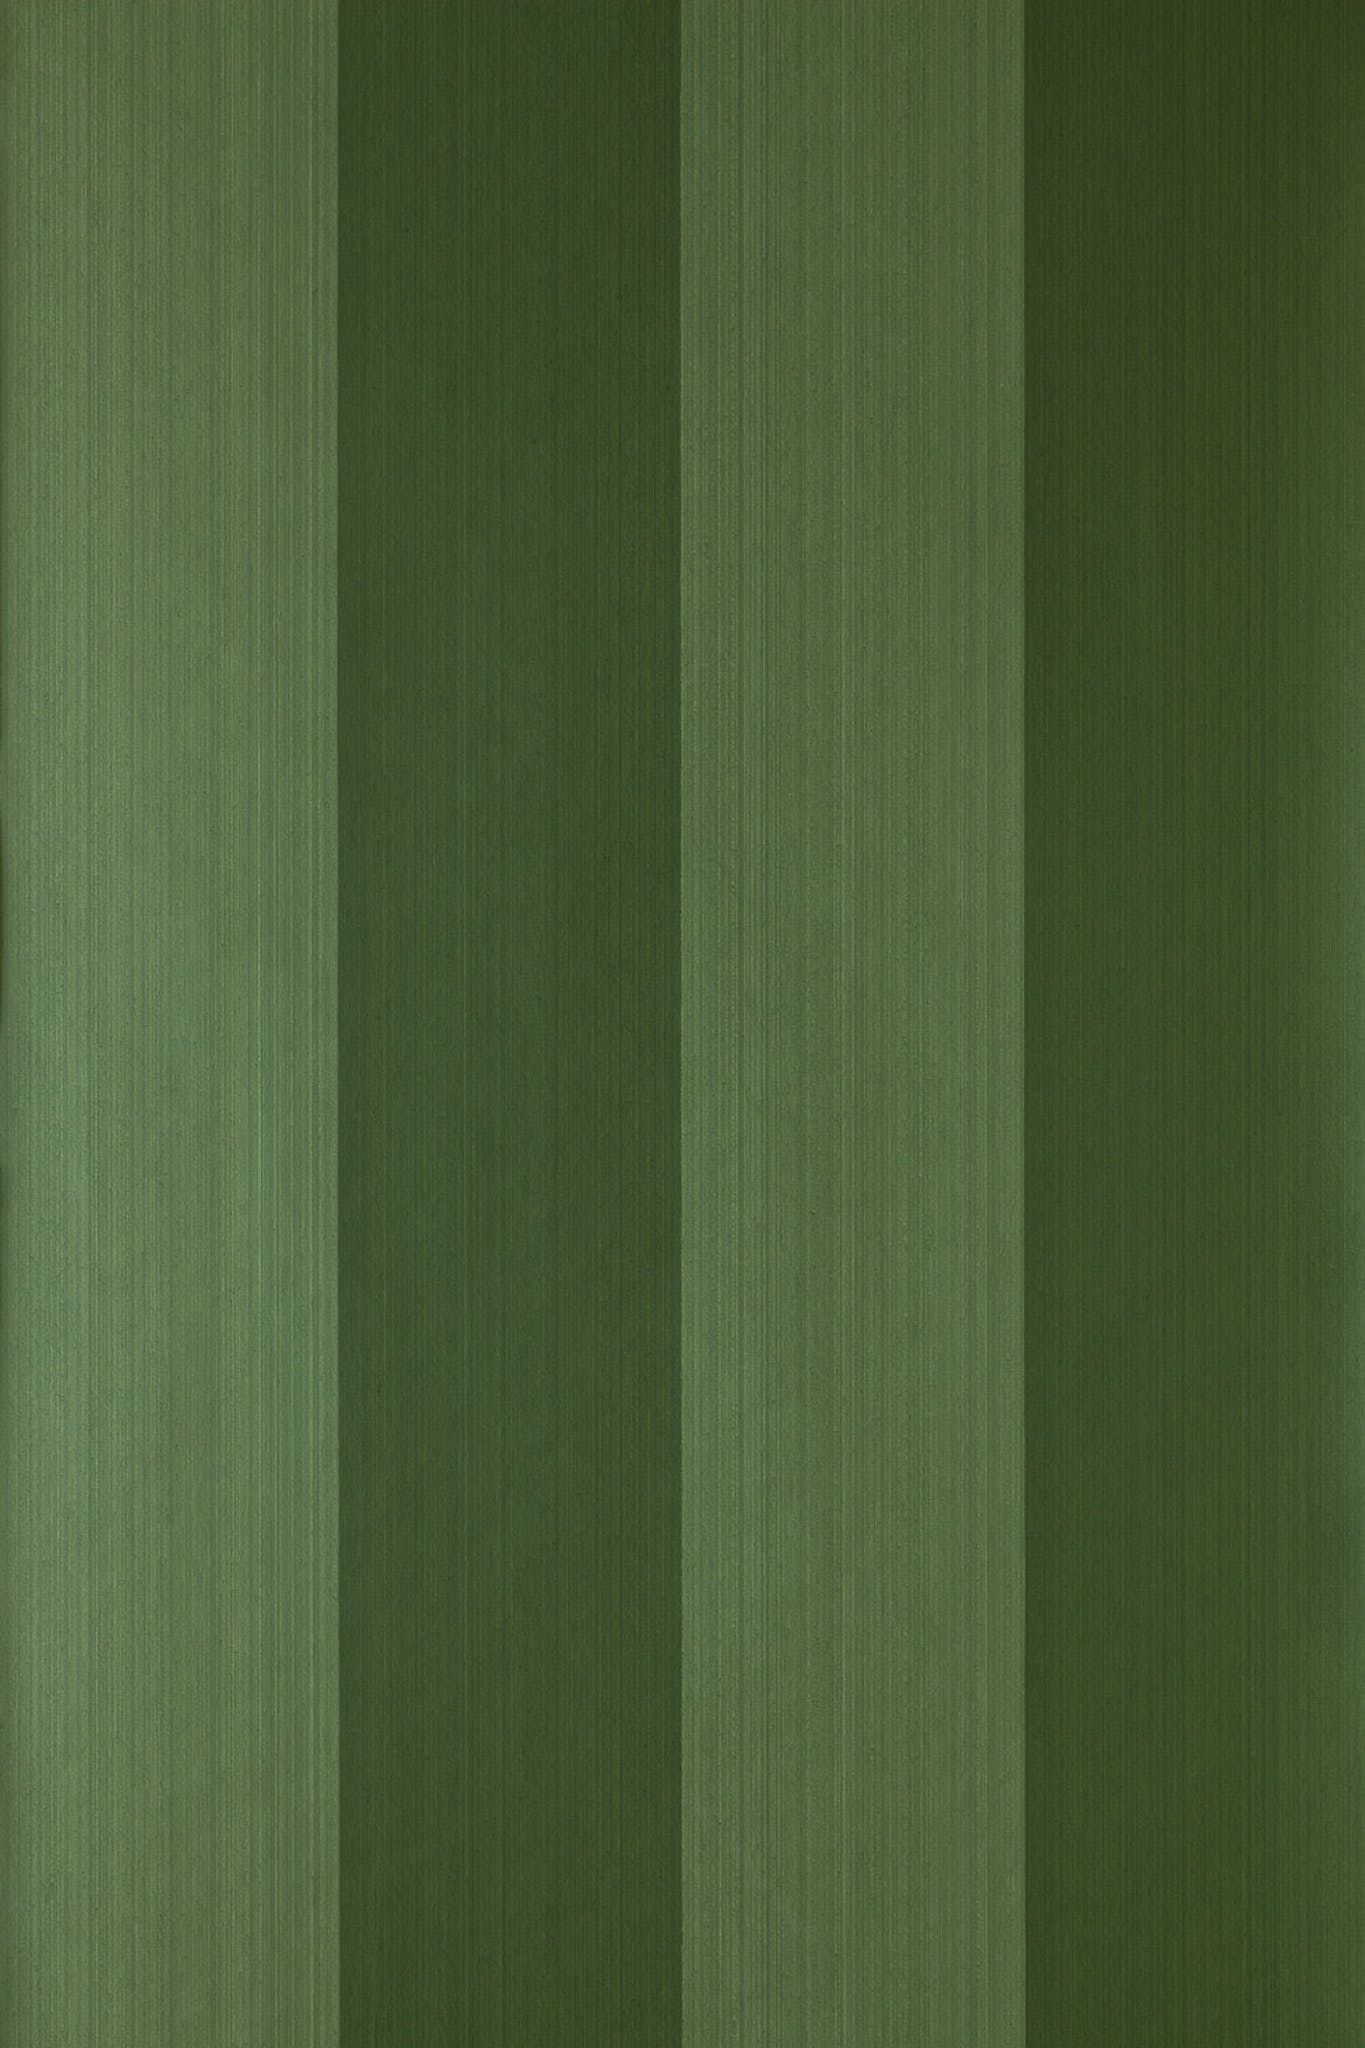 Grass , HD Wallpaper & Backgrounds